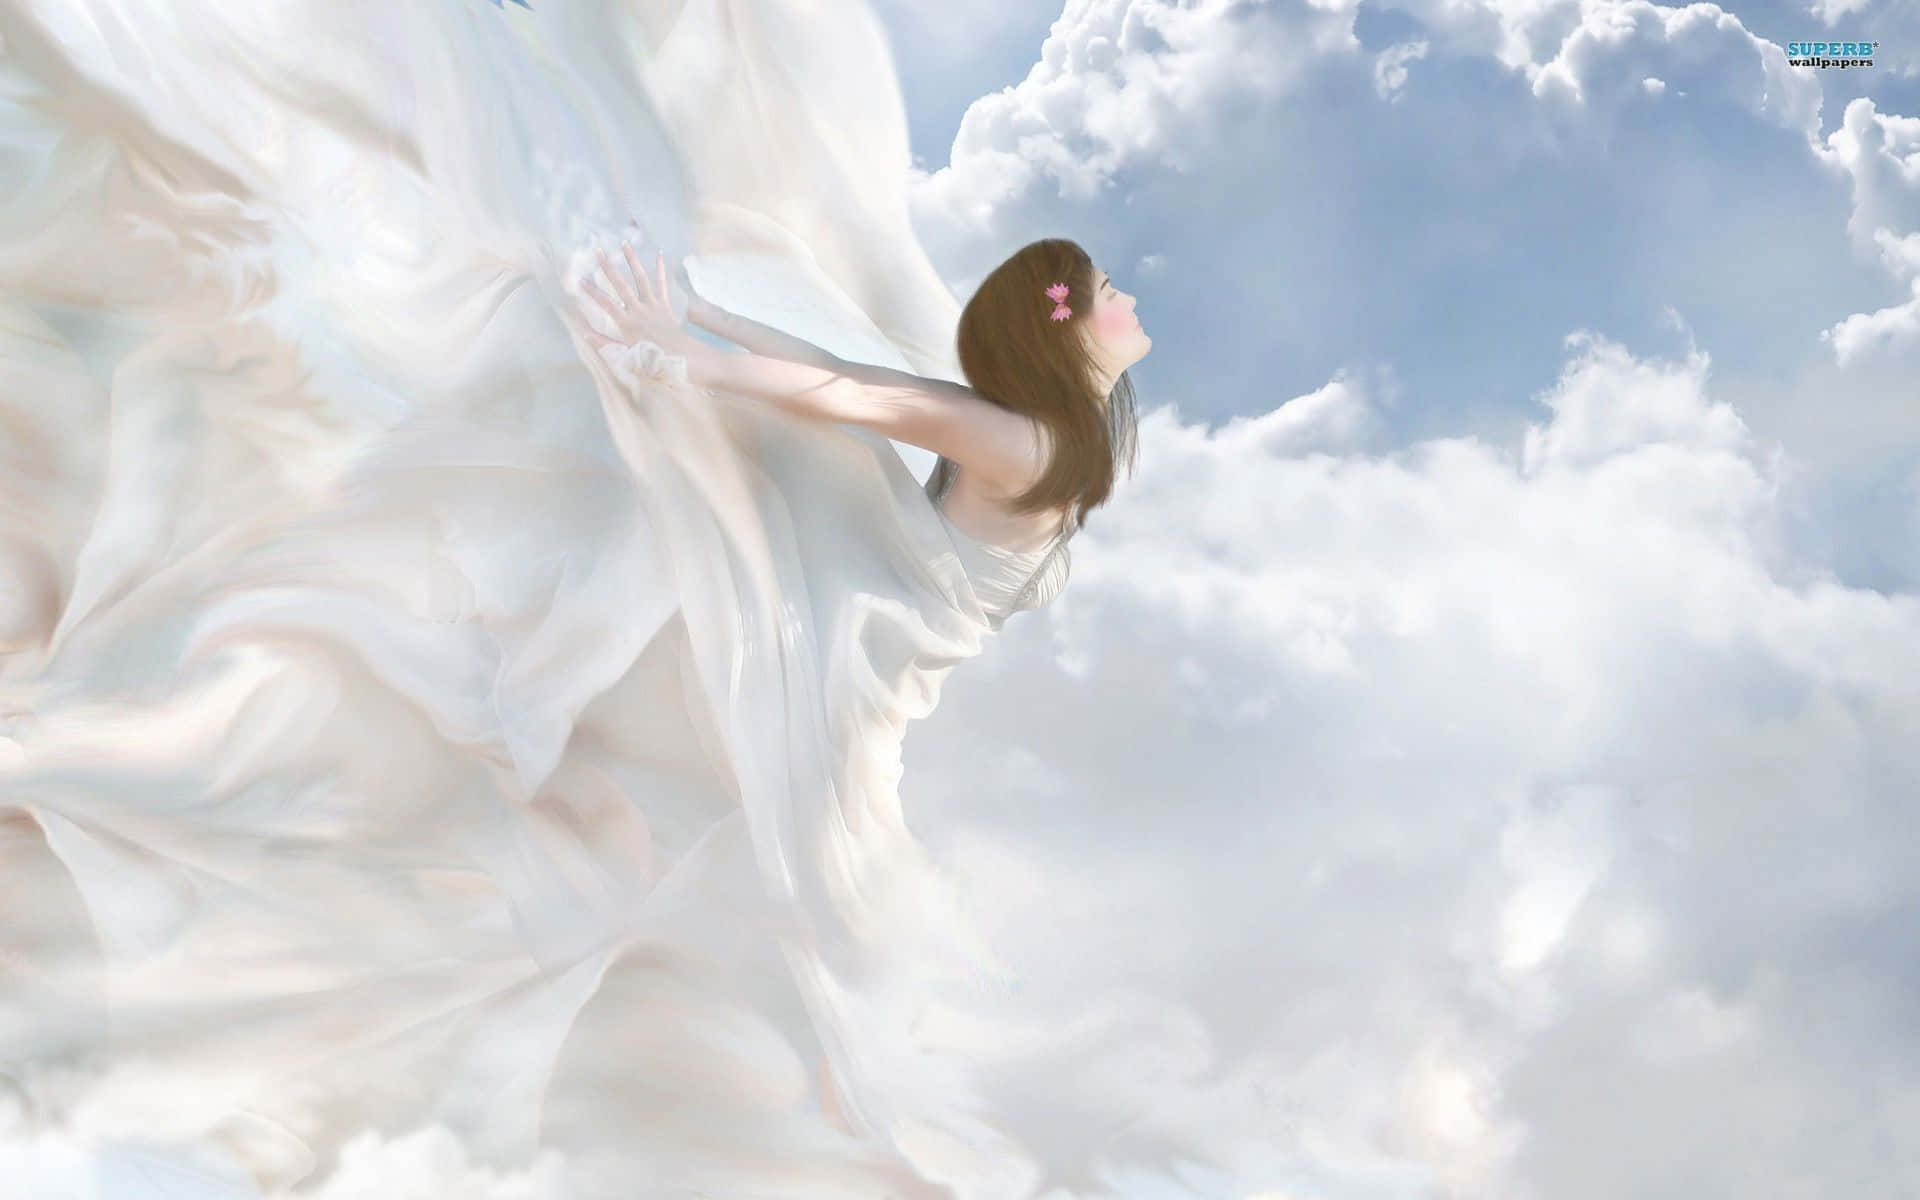 En guddommelig engel ser over en drømmende himmel af skyer. Wallpaper